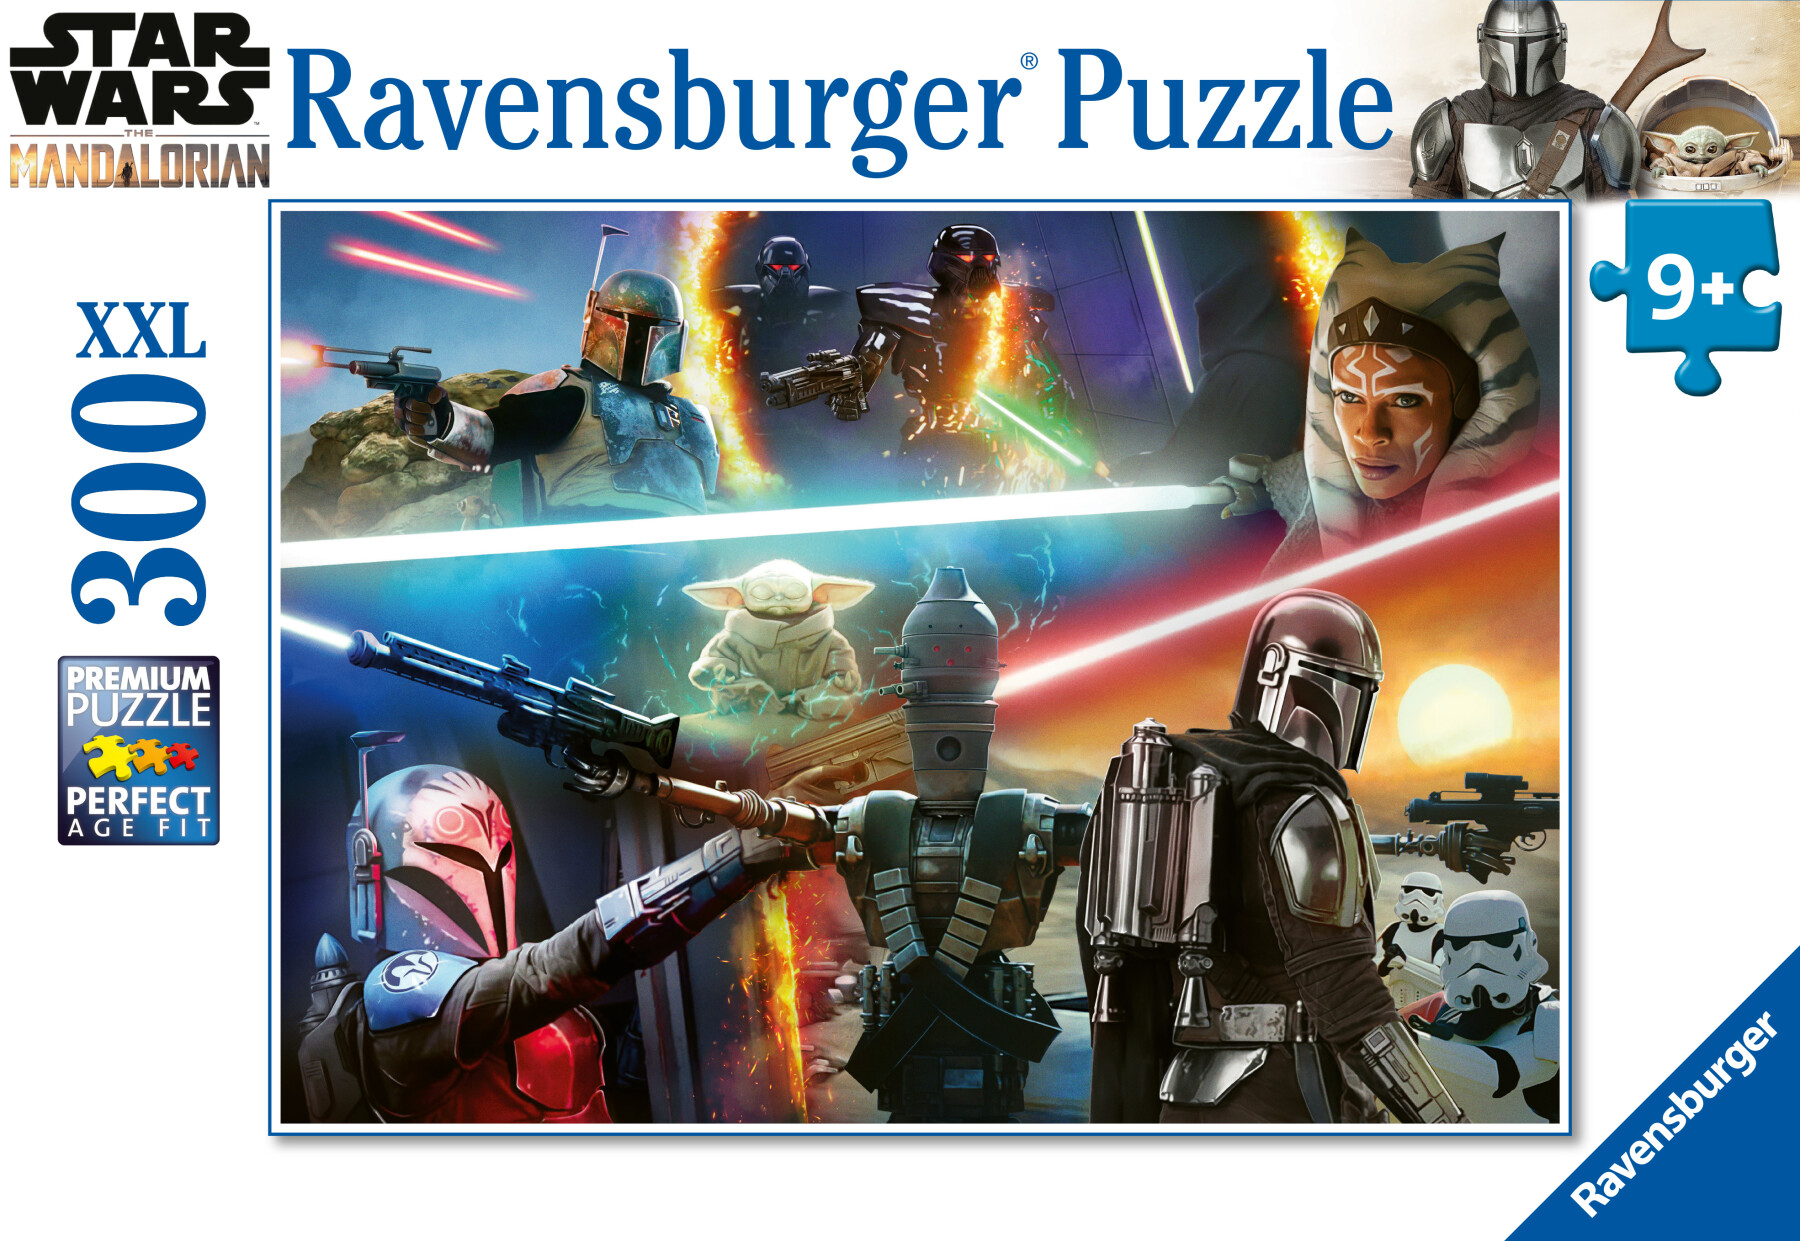 Ravensburger - puzzle the mandalorian, 300 pezzi xxl, età raccomandata 9+ anni - RAVENSBURGER, Star Wars